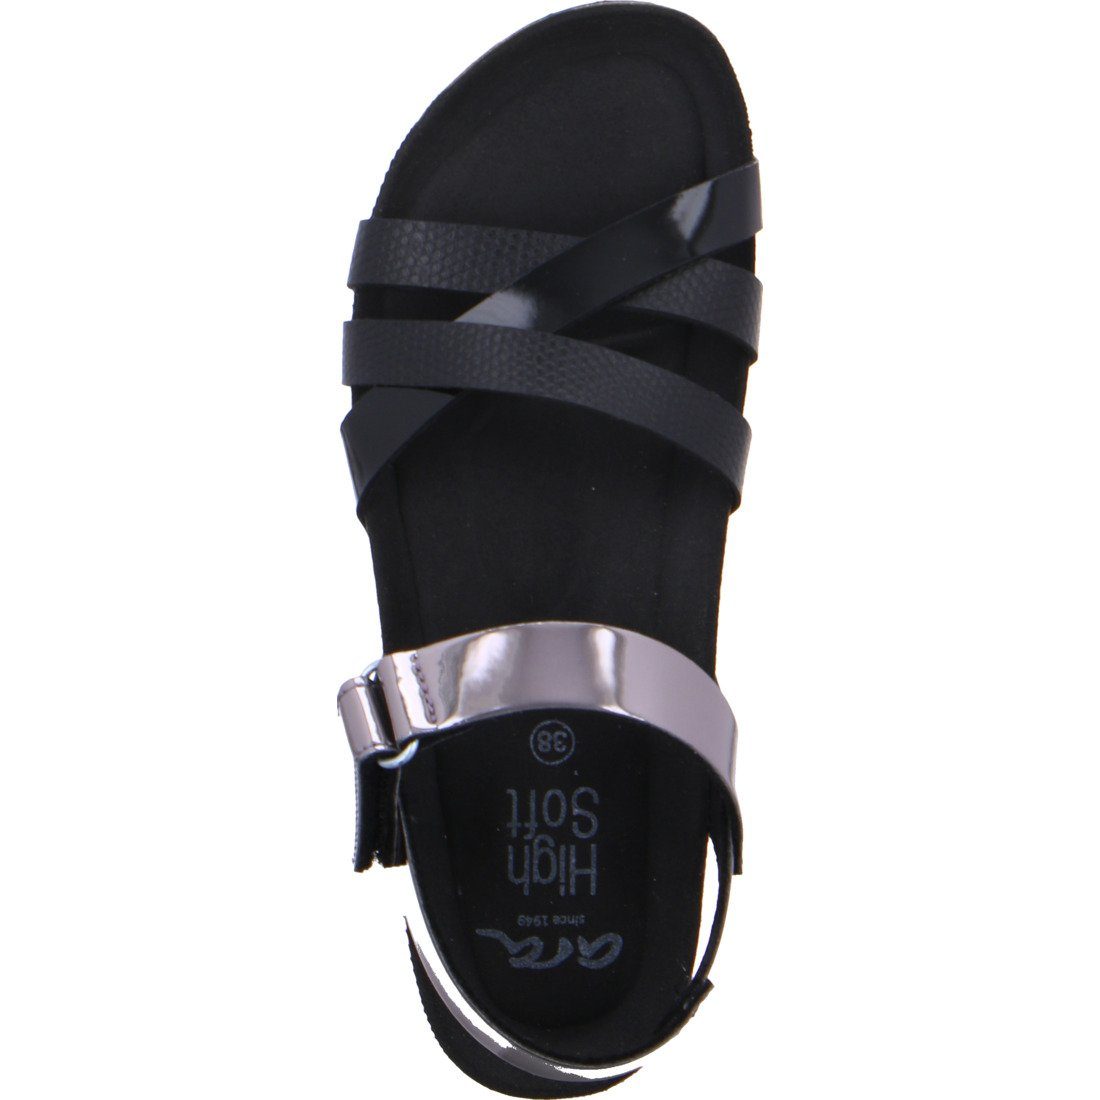 Damen Schuhe, Bali - Sandalette Sandalette Leder-Optik Ara Ara